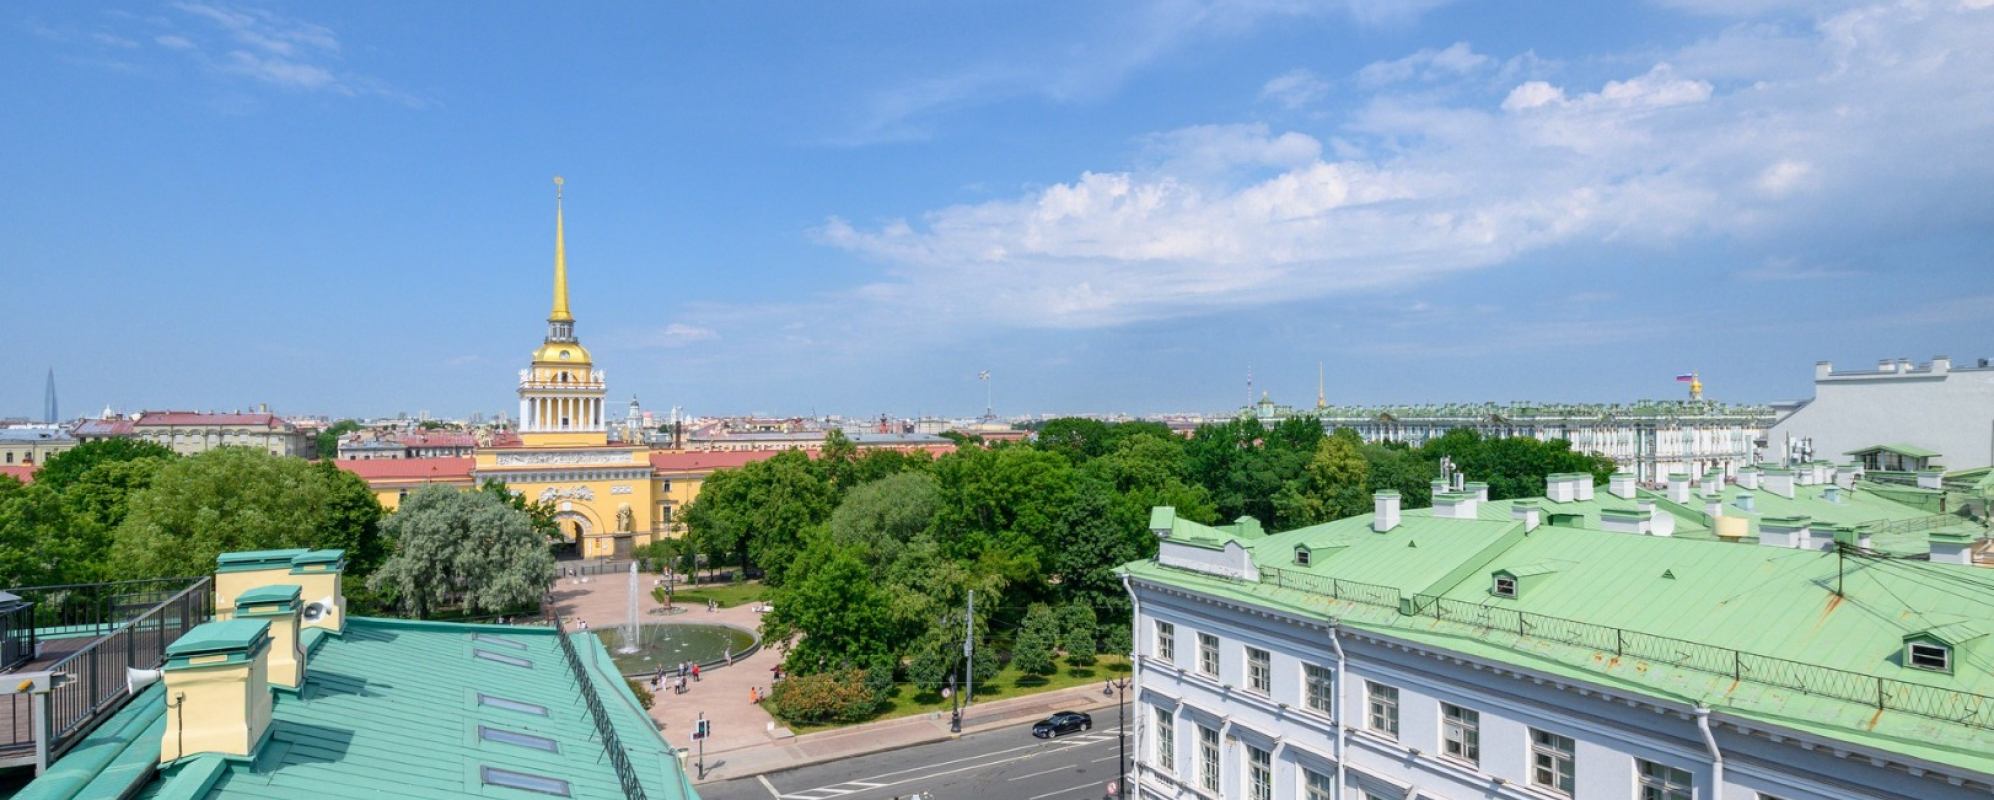 Фотографии гостиницы Соло Панорама Дворцовая площадь